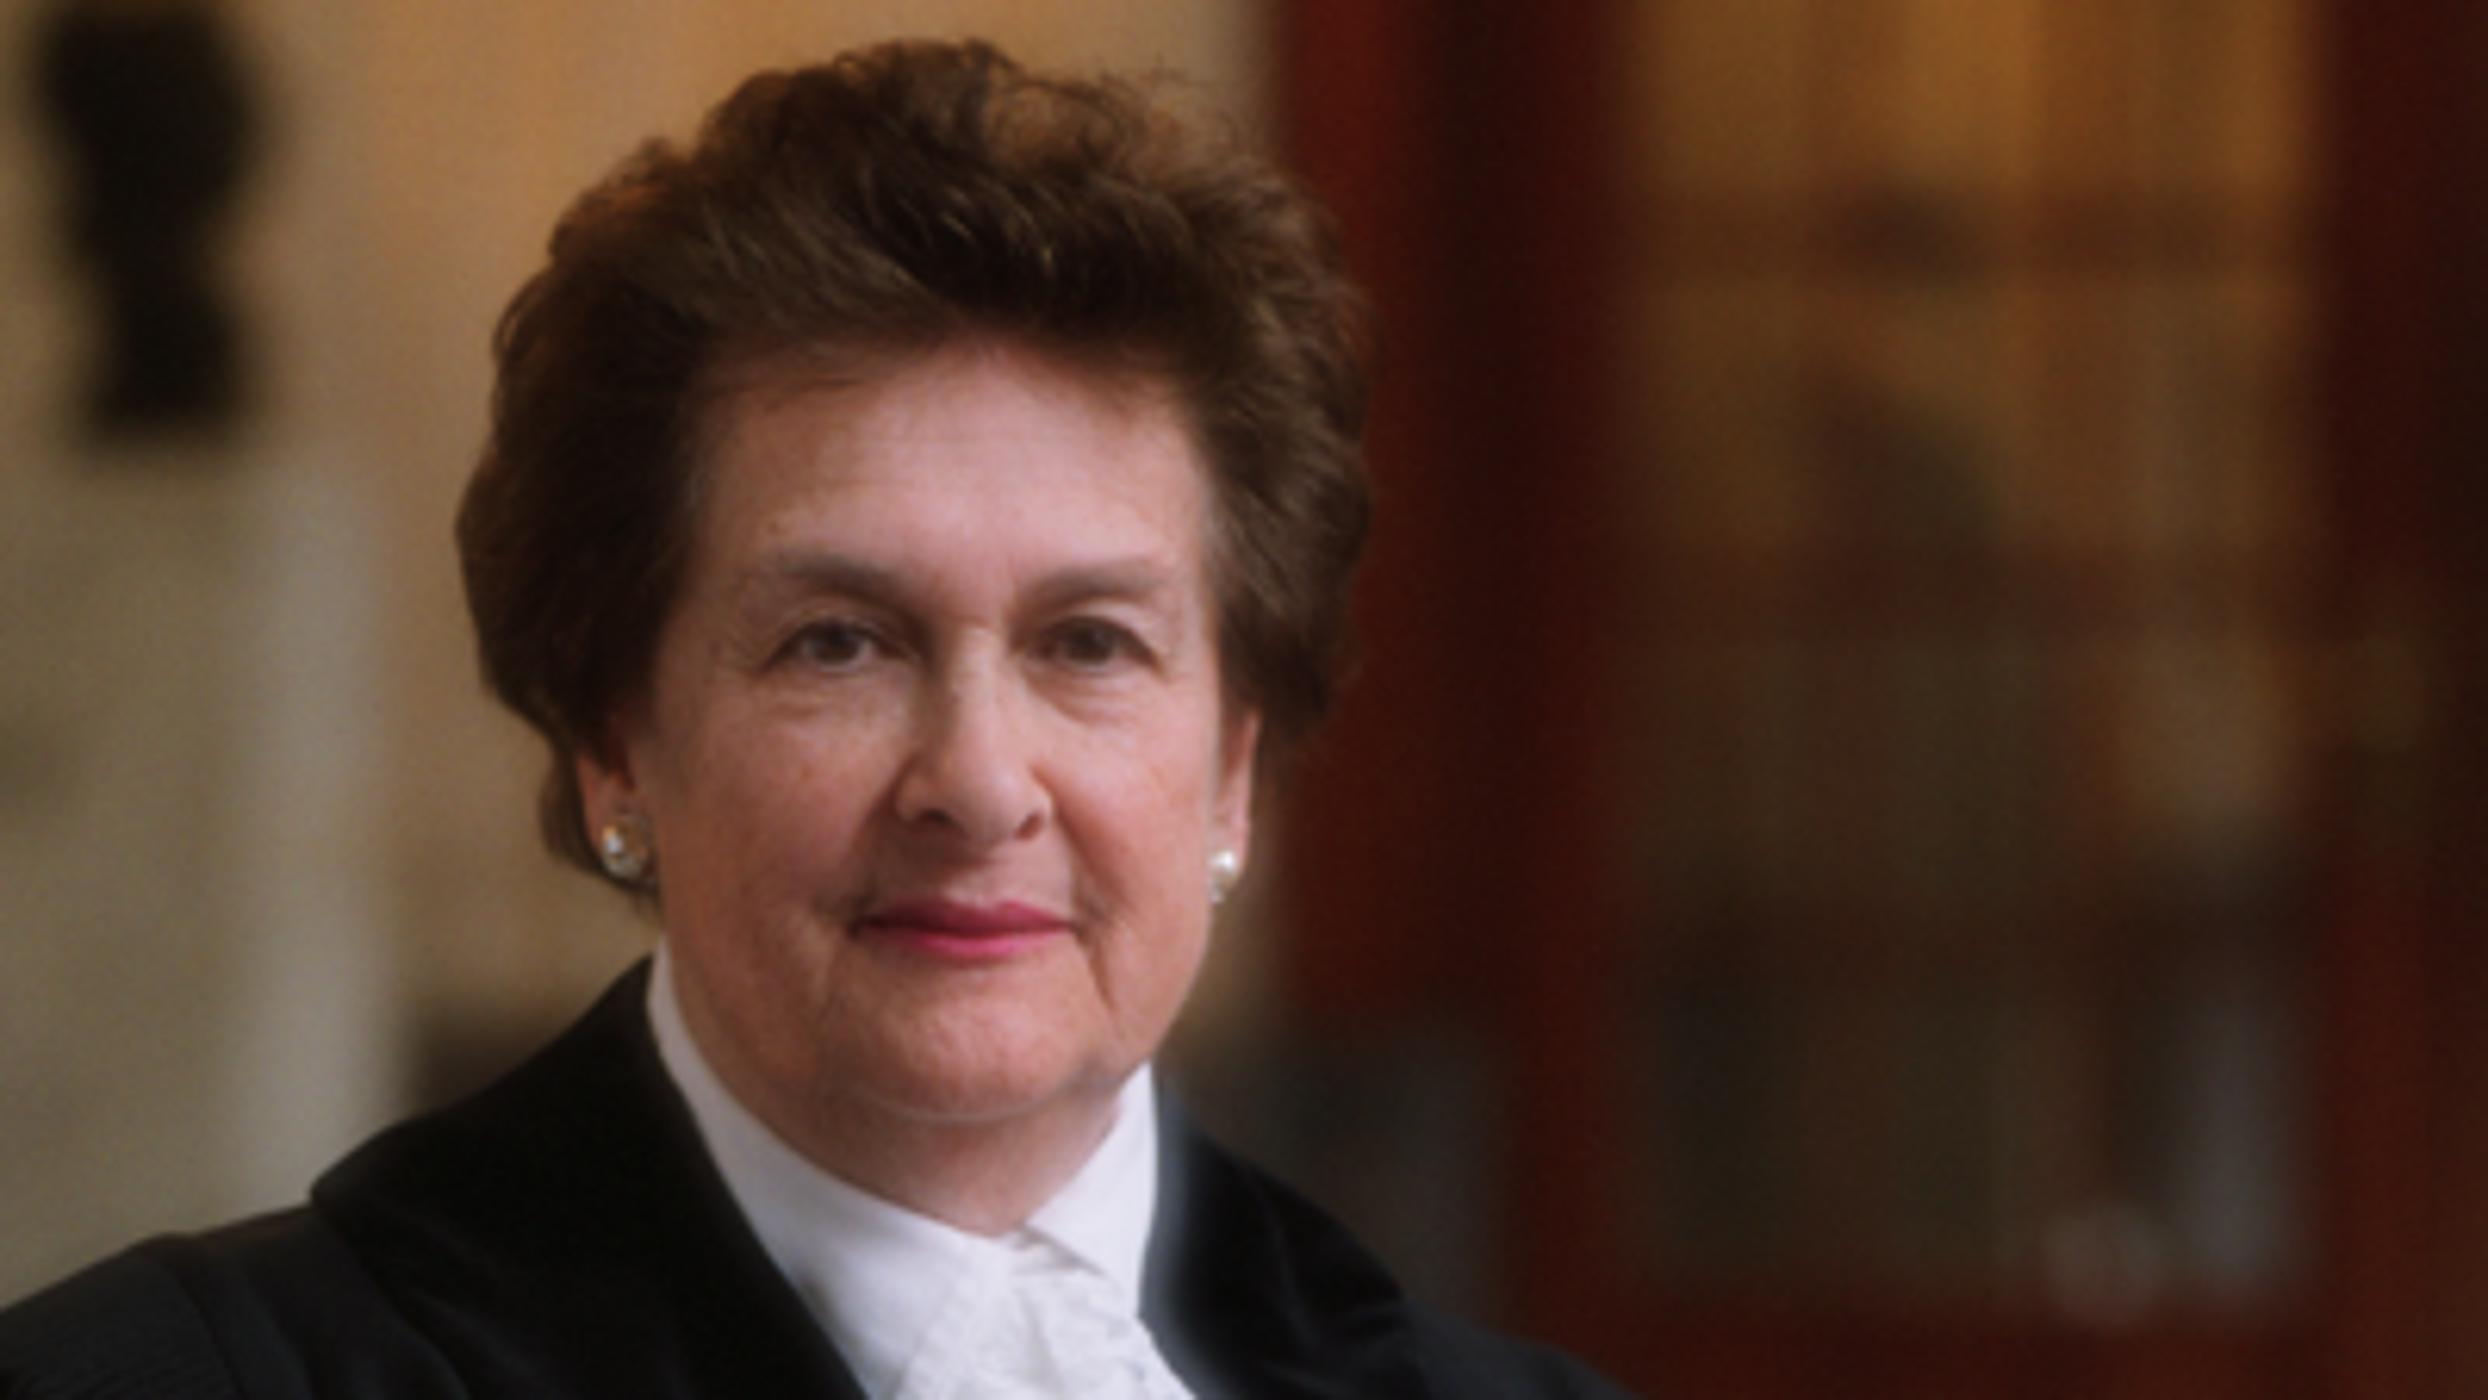 'Democracy and International Law': Dame Rosalyn Higgins